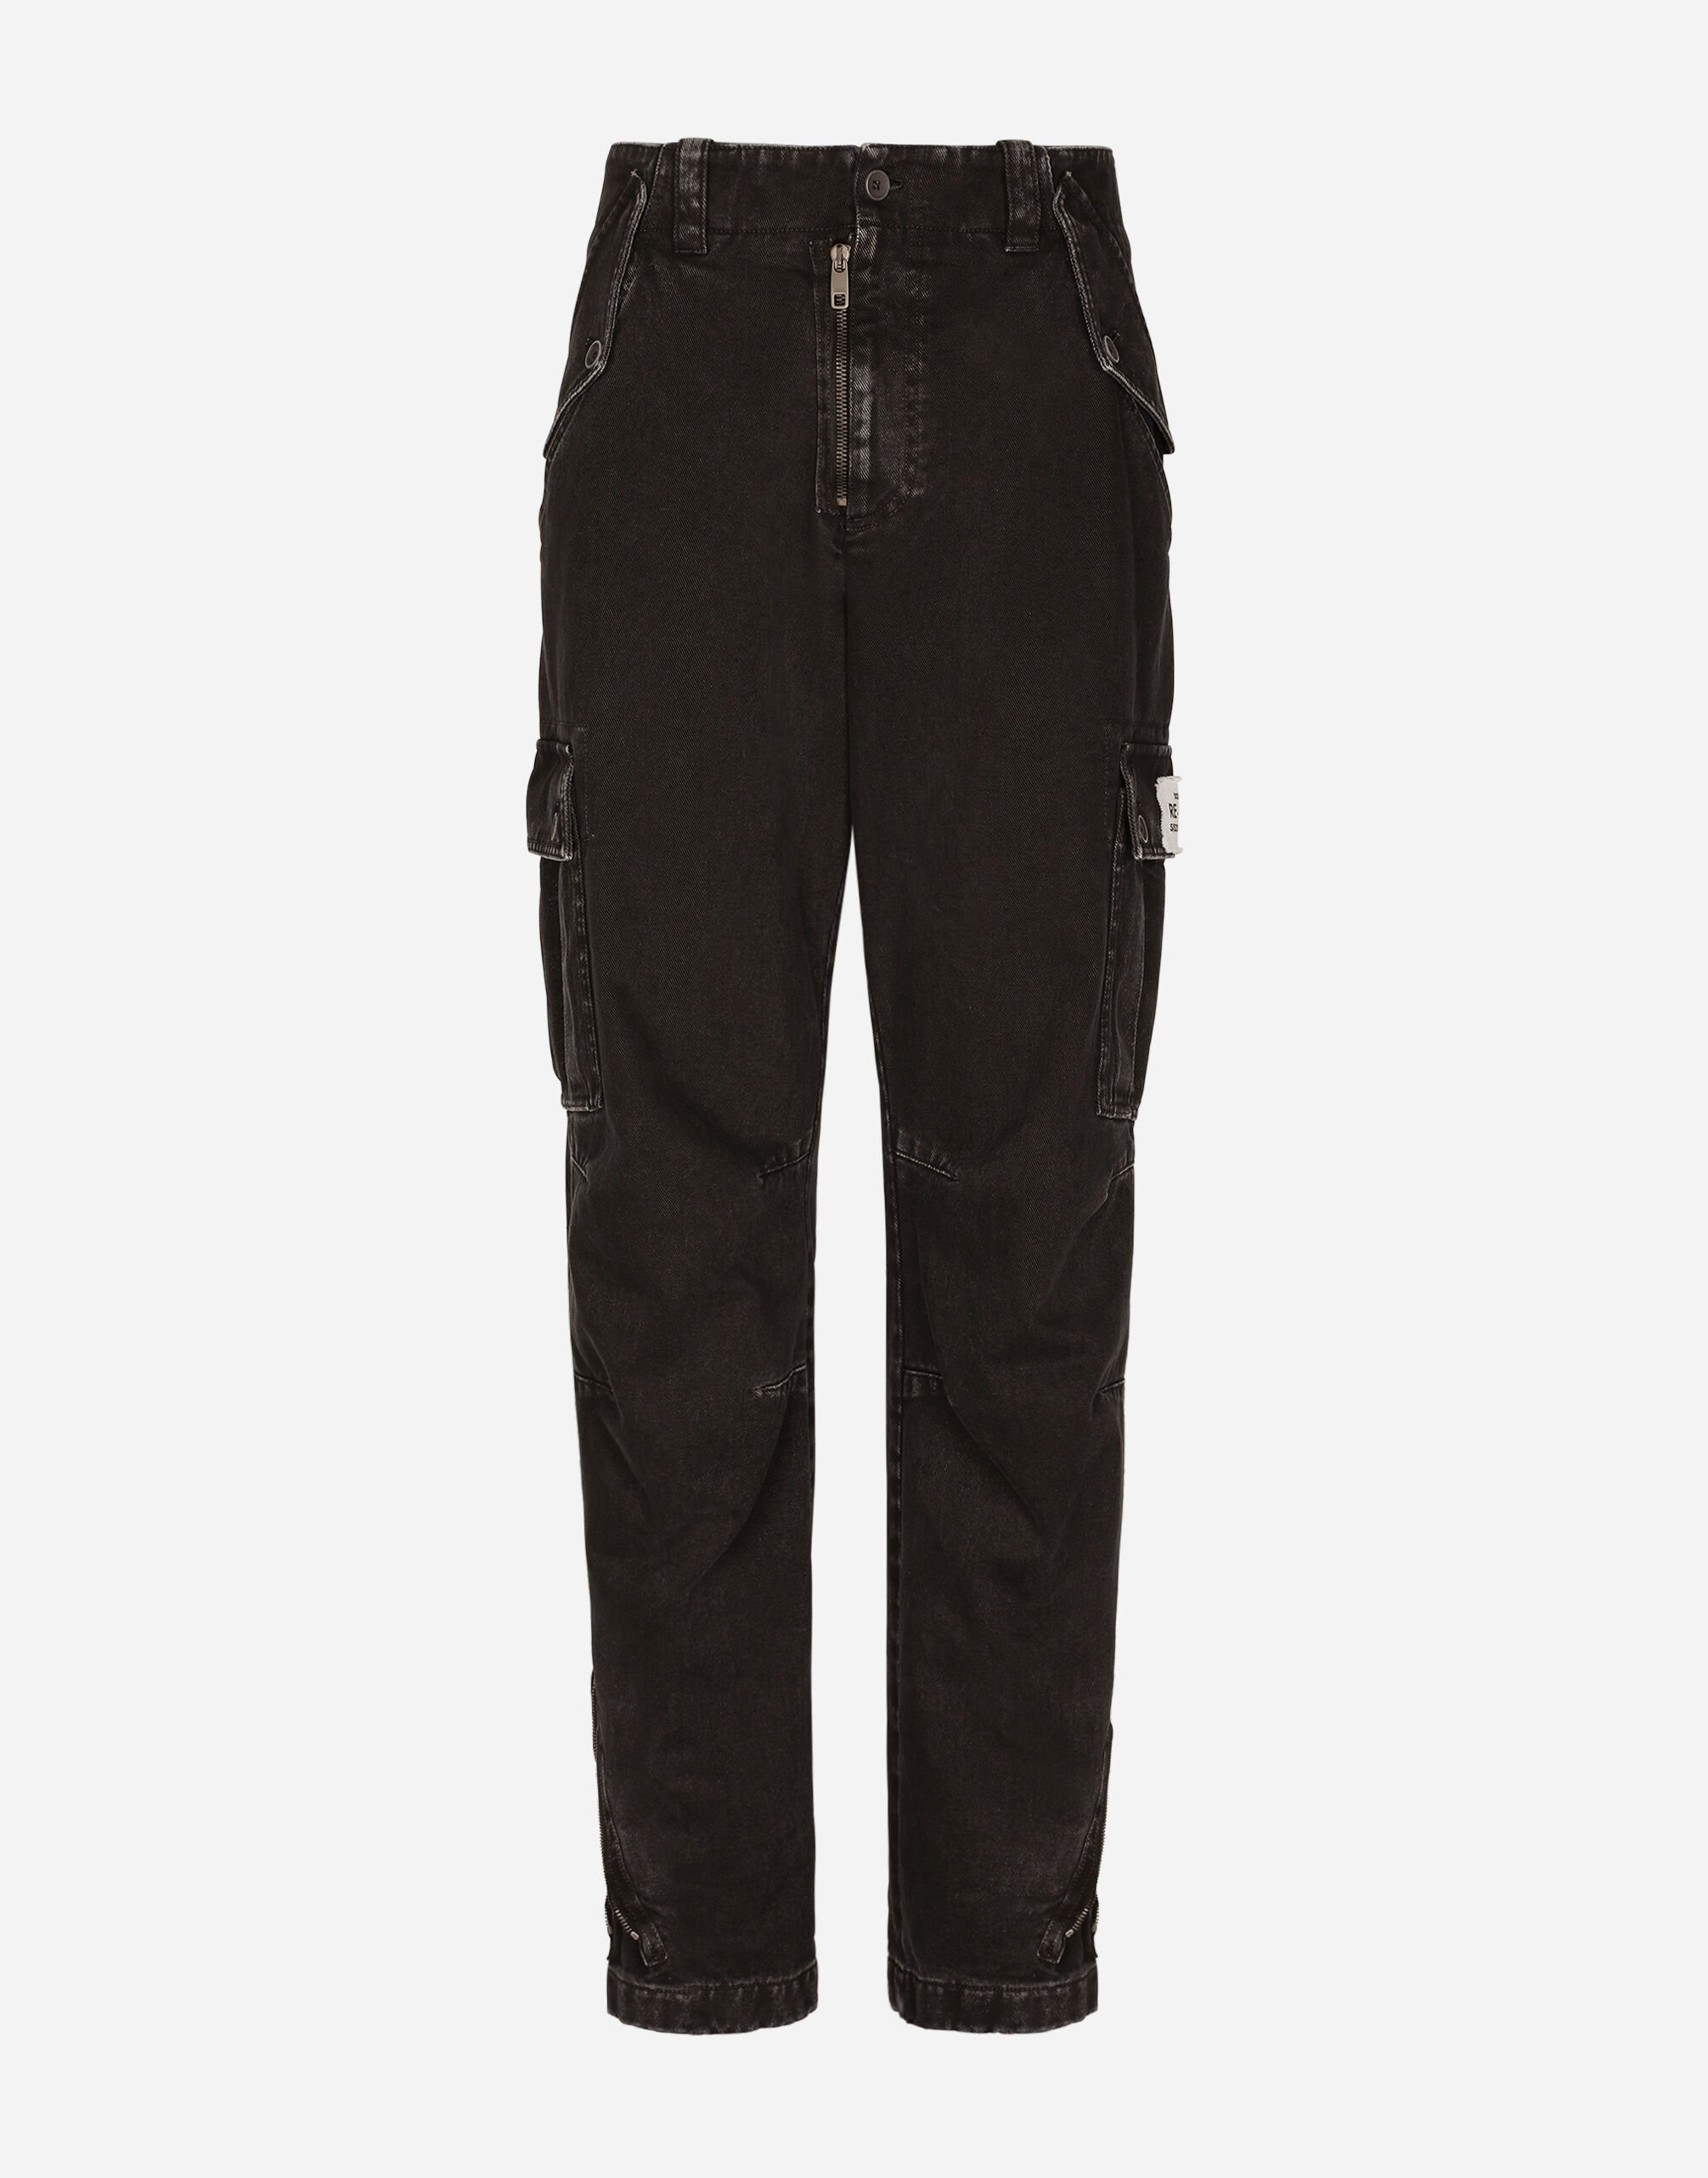 Dolce & Gabbana Pantalón cargo de algodón teñido en prenda Negro G2PQ4TGG150